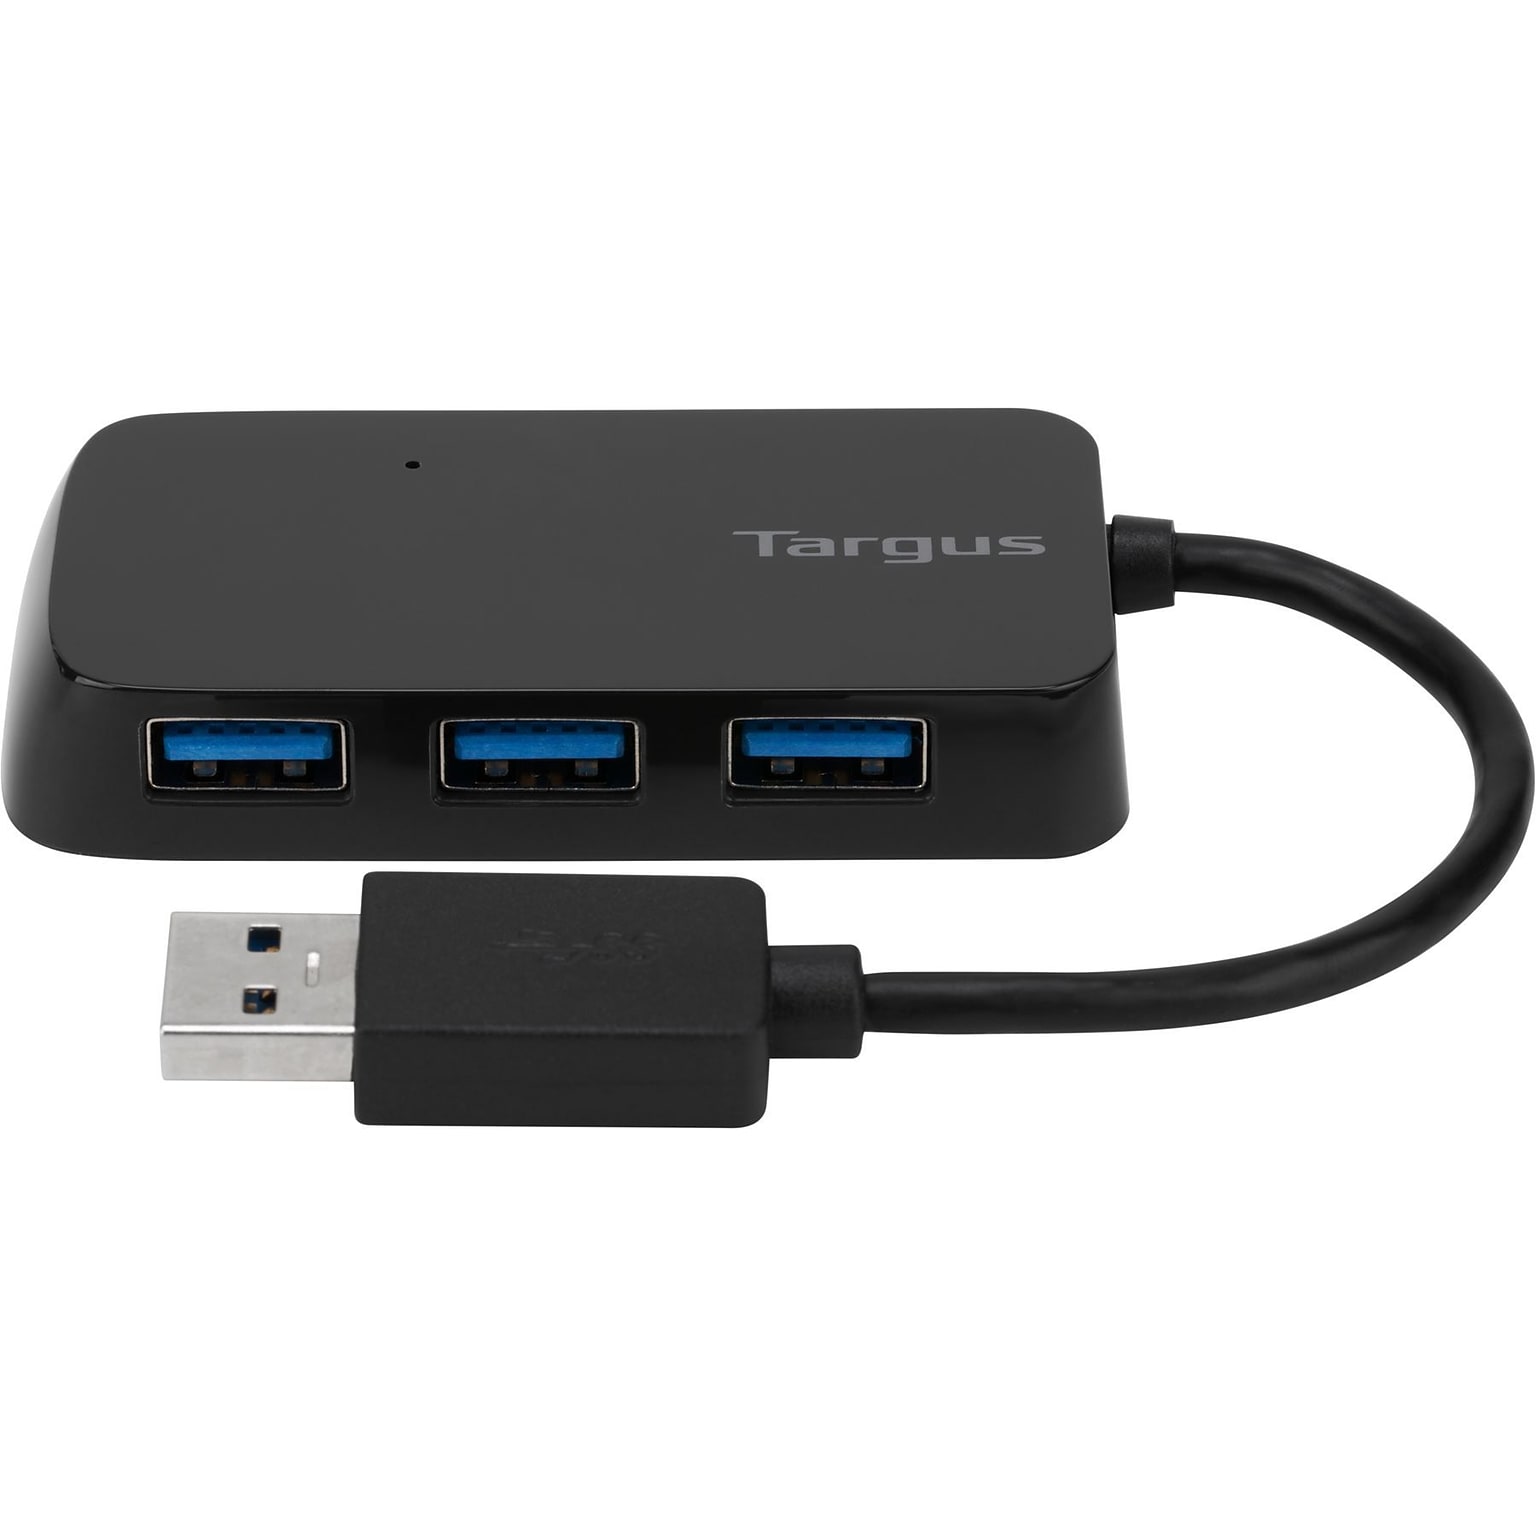 Targus® 4 Port USB 3.0 Hub; Black (ACH124US)